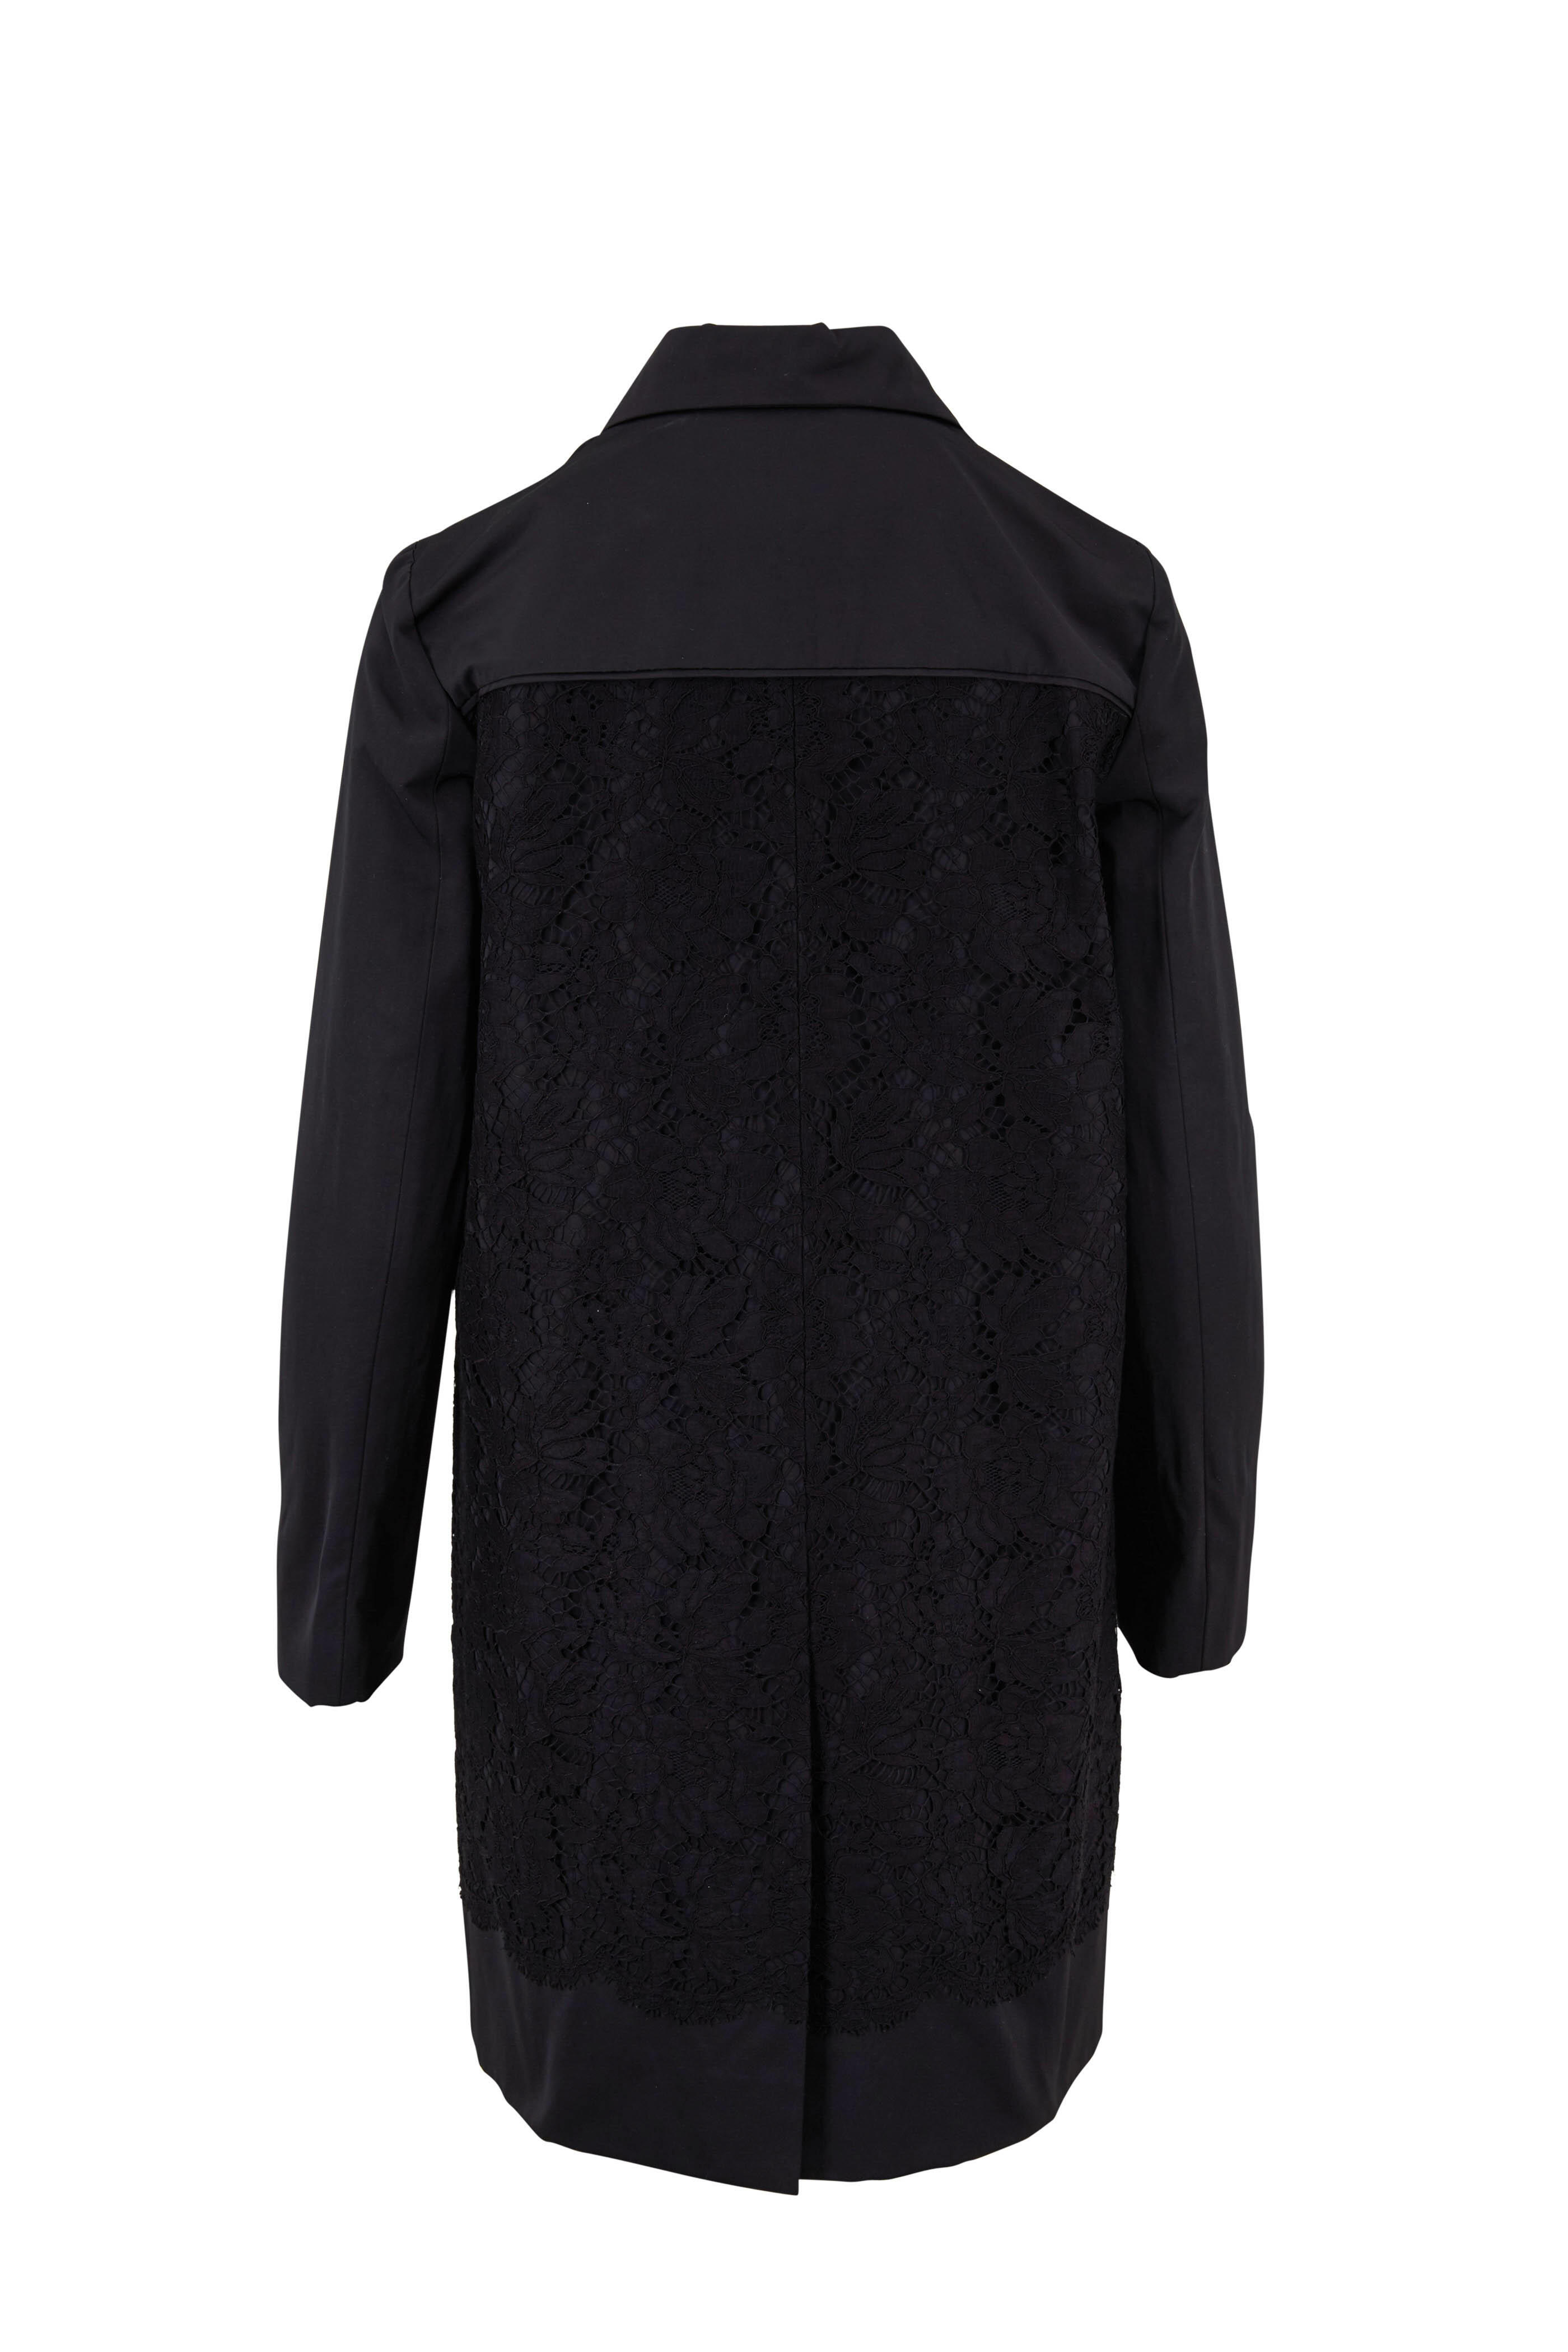 Burberry stud-embellished cashmere cape - Black